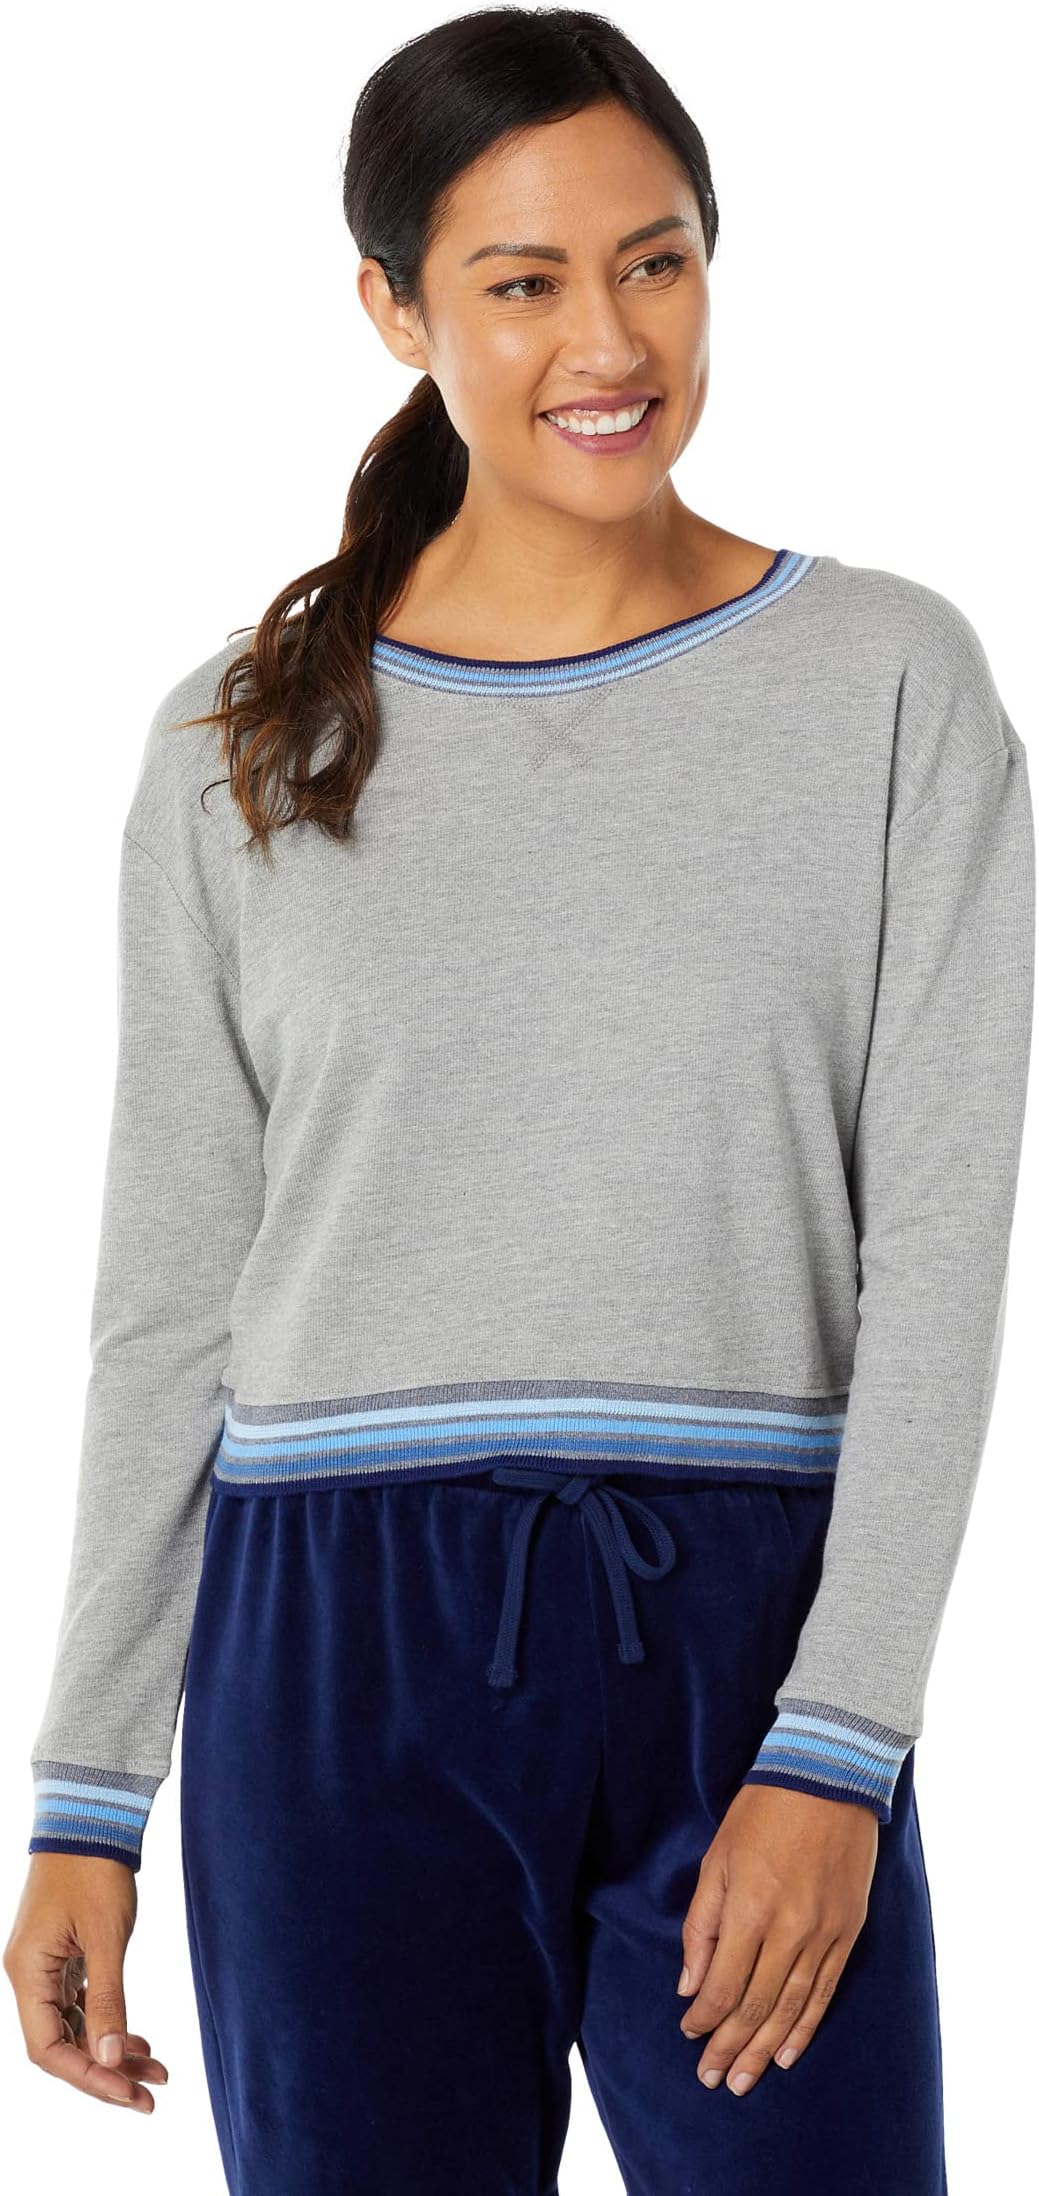 Пуловер с контрастной полосой Sundown Jada из махрового хлопка и модала Splendid, цвет Heather Charcoal